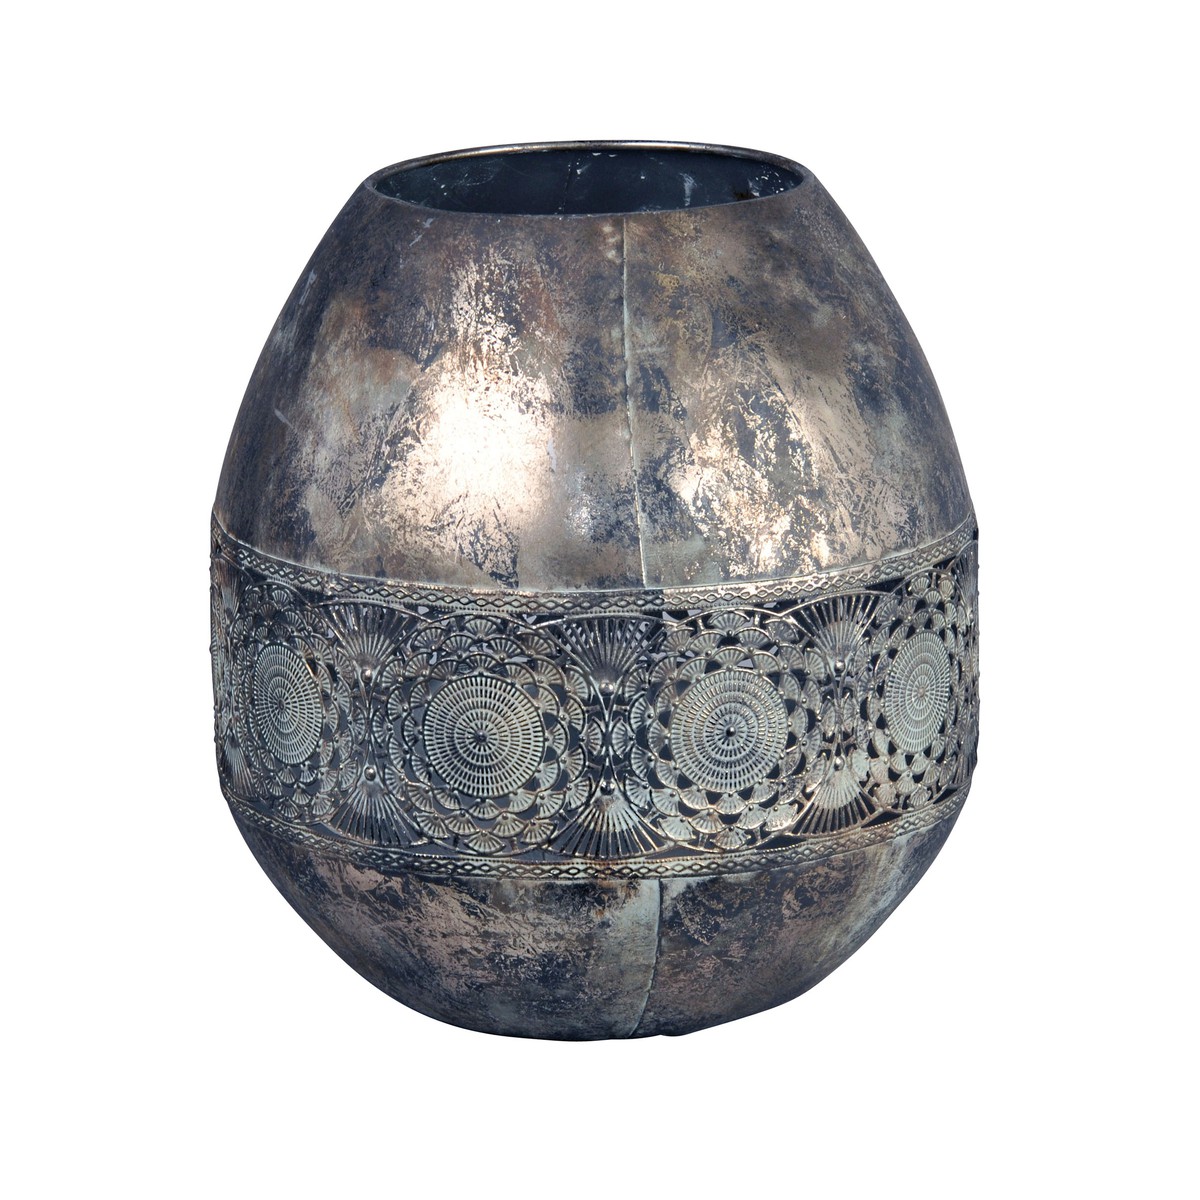   Egg Metal Lantern Plata Gris argent 19x20cm